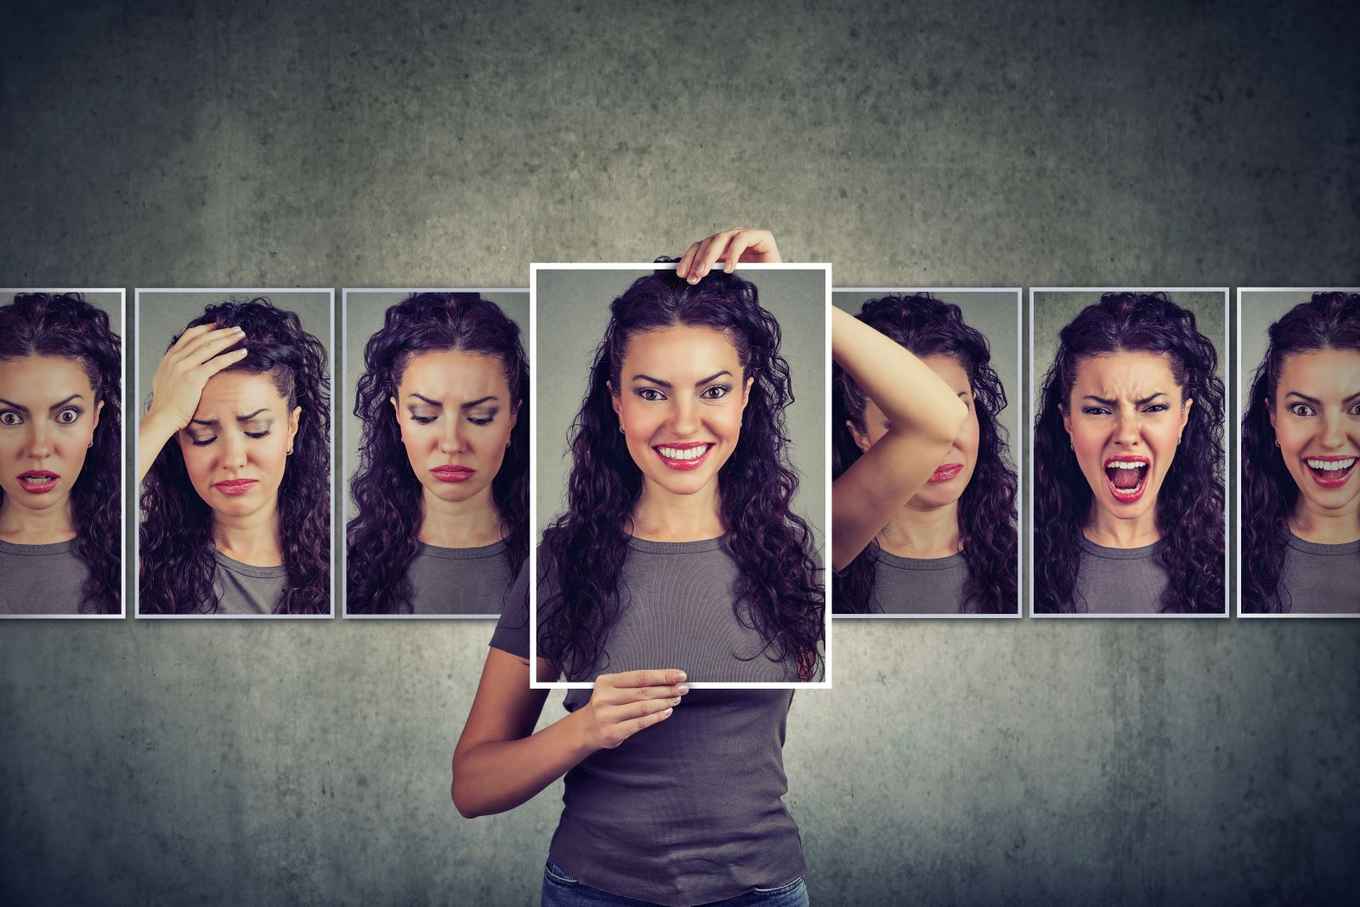 een vrouw toont met haar gezicht verschillende emoties